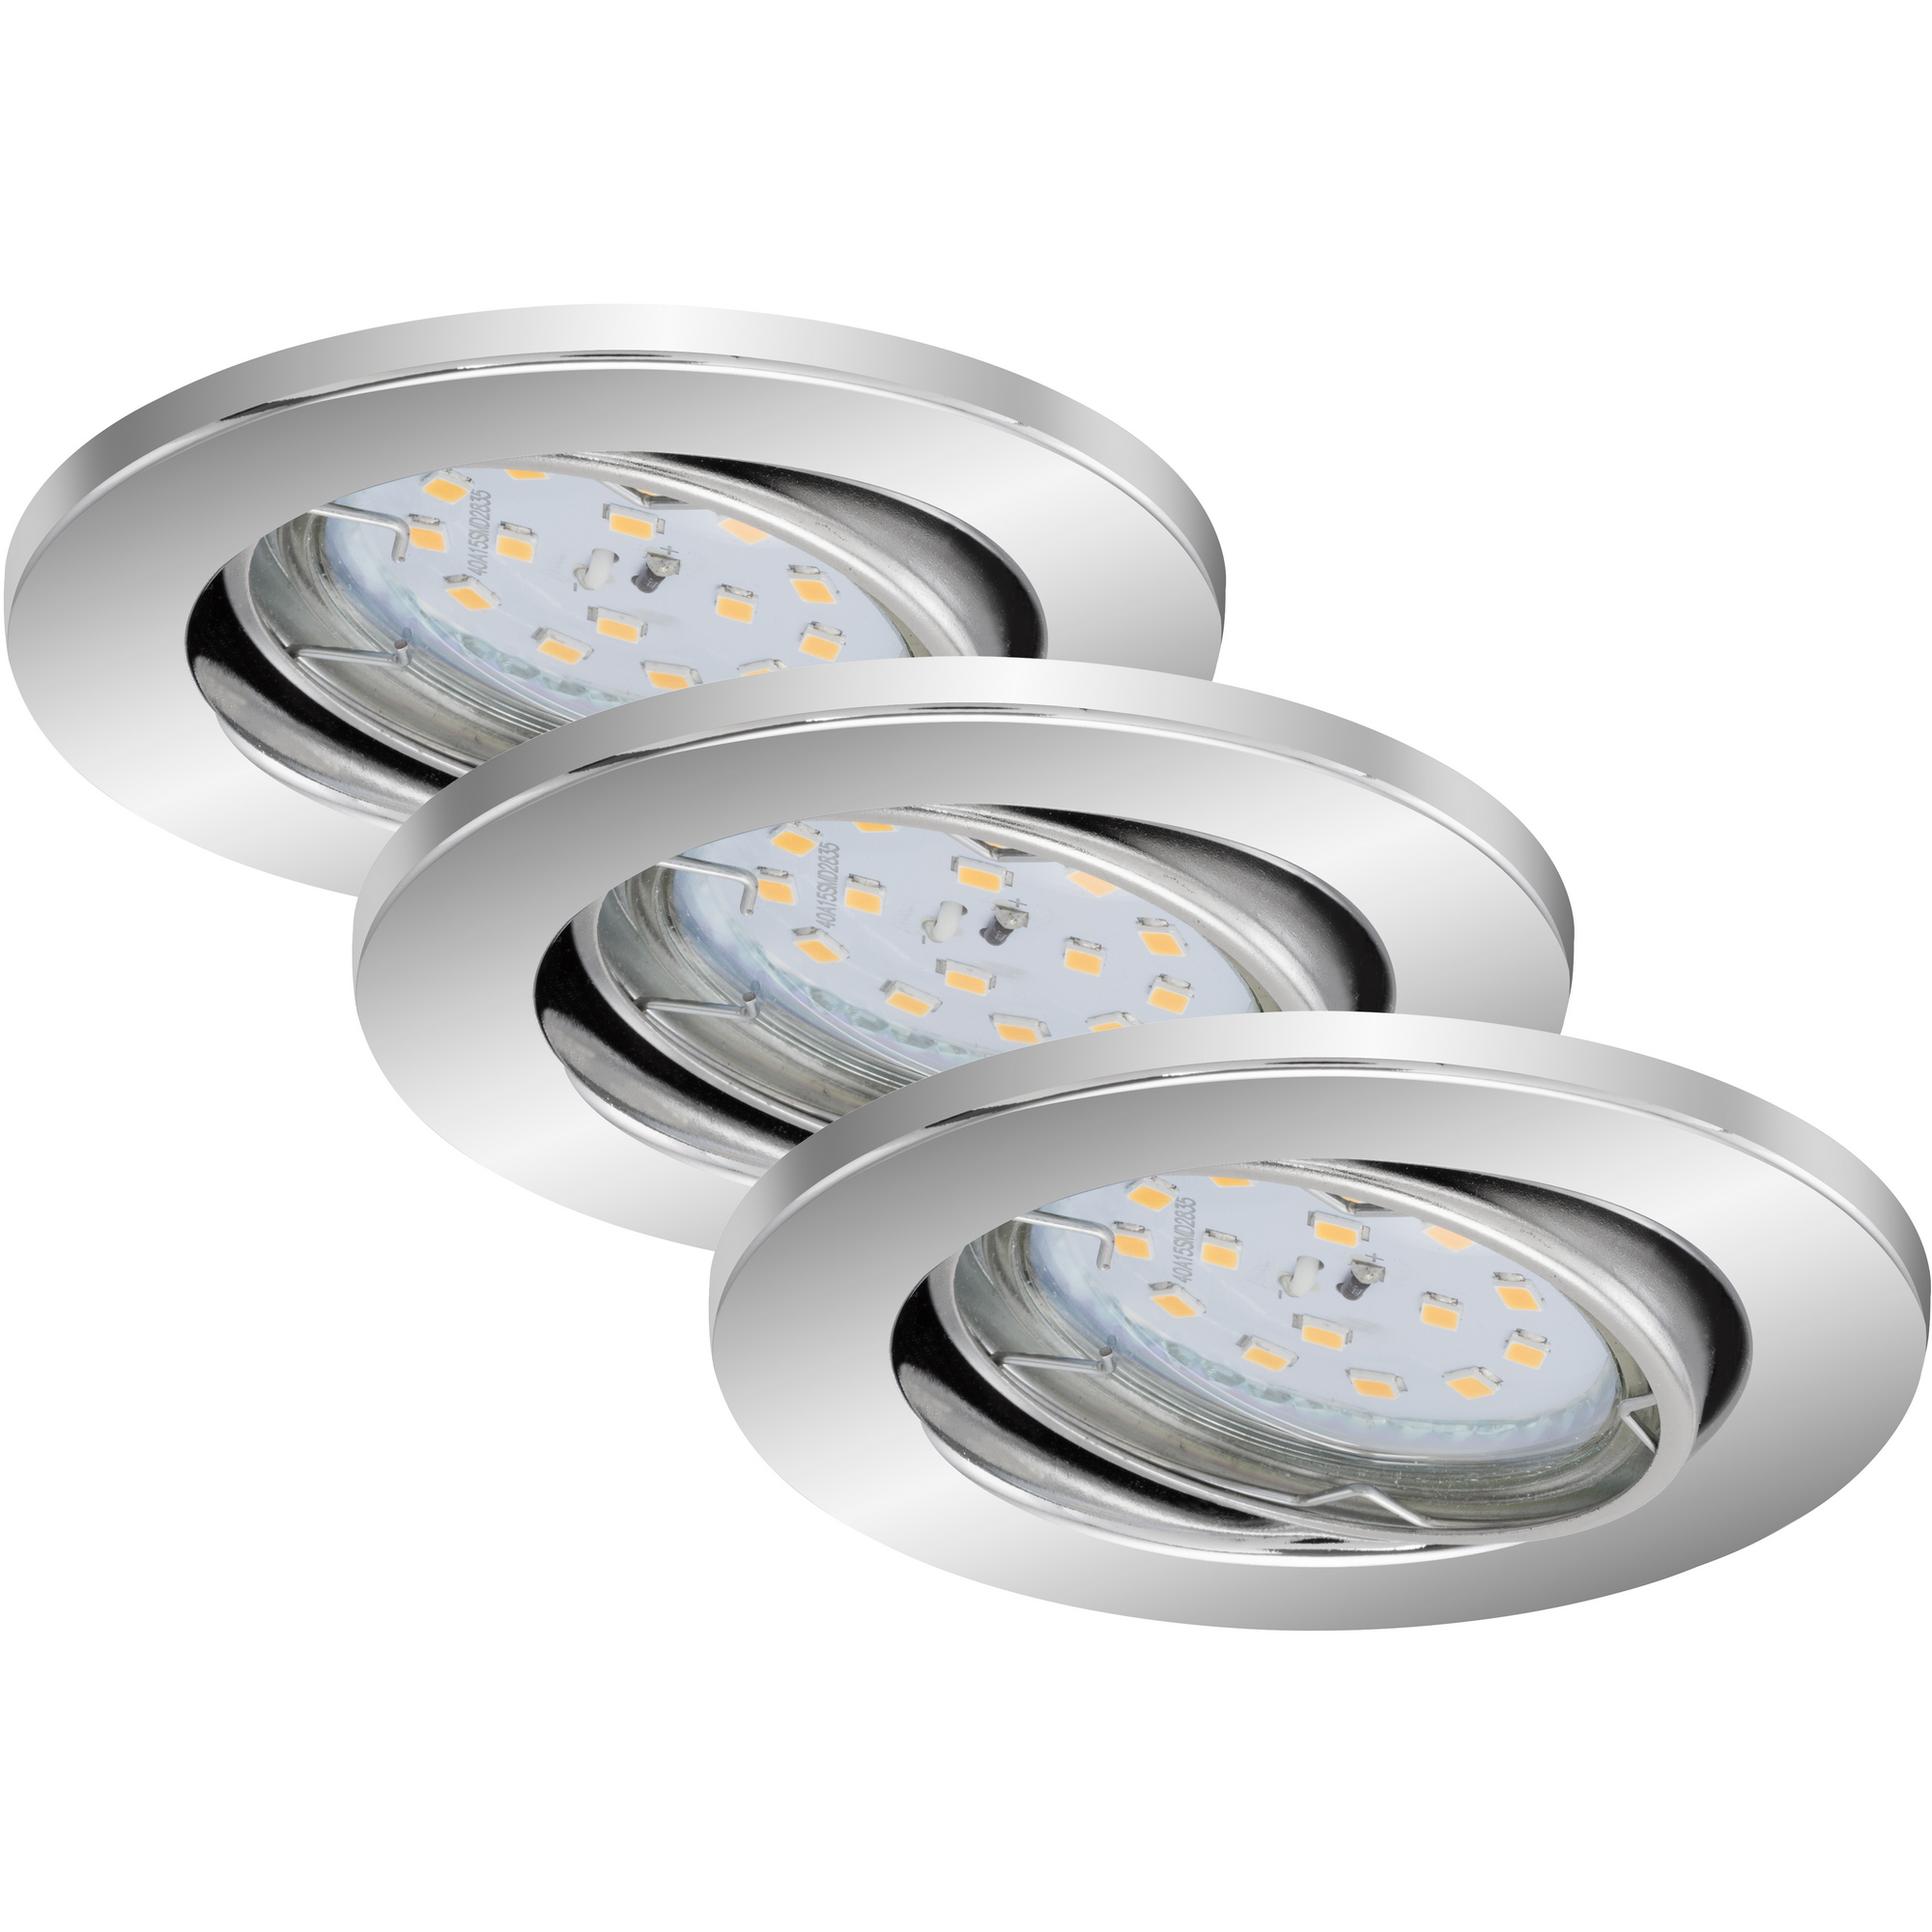 LED-Einbauleuchte 'Fit Dim' chromfarben 400 lm, 3er-Set + product picture